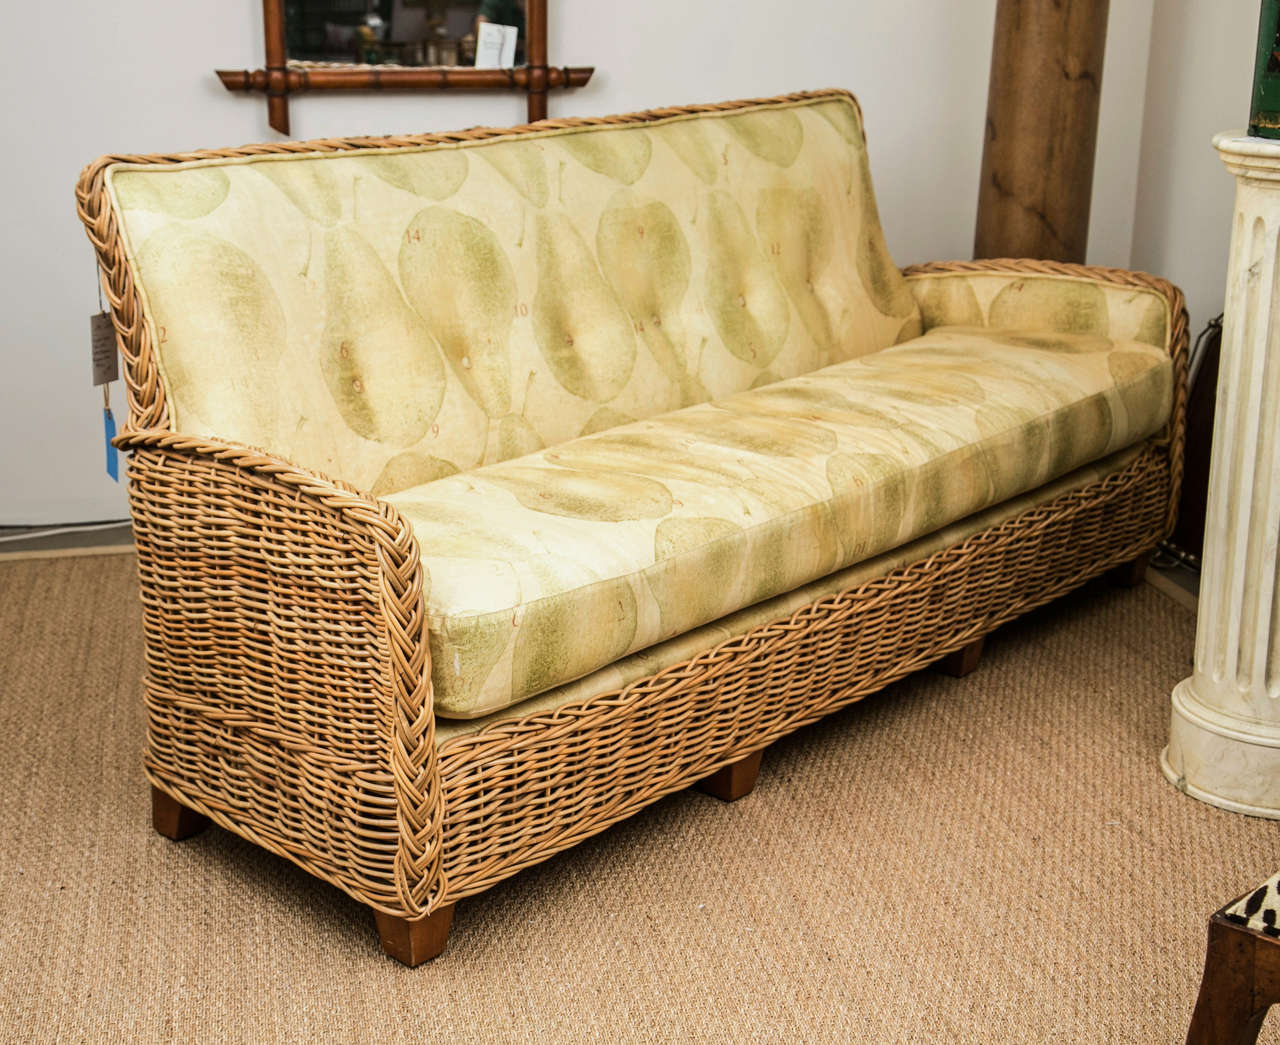 Wicker Works Rattan Sofa With Belgin Linen Upholstery 1